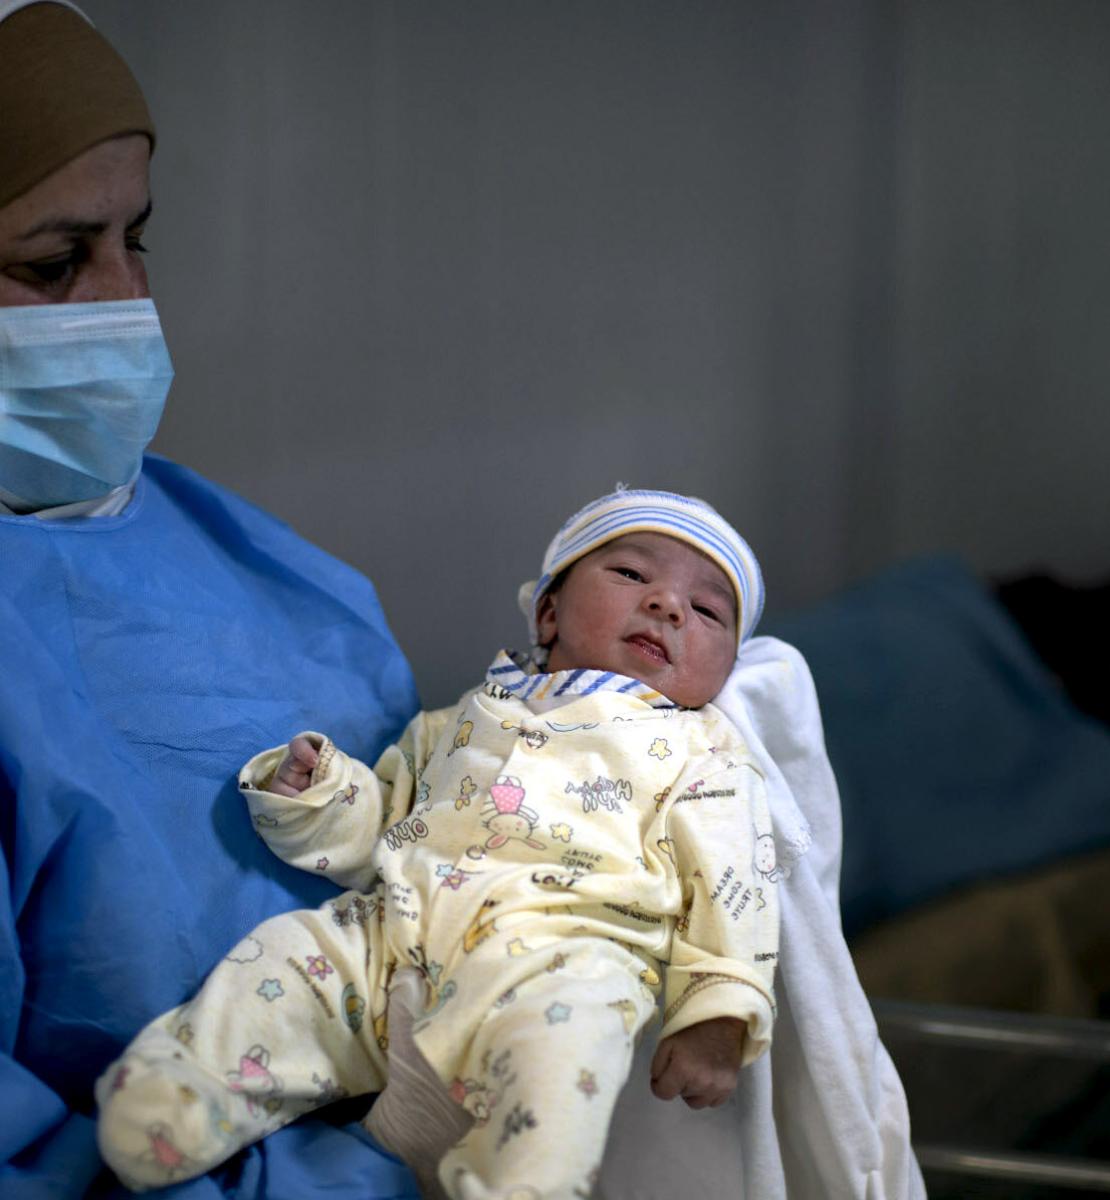 Une soignante portant un masque et une blouse de protection bleue tient un nouveau-né dans les bras.